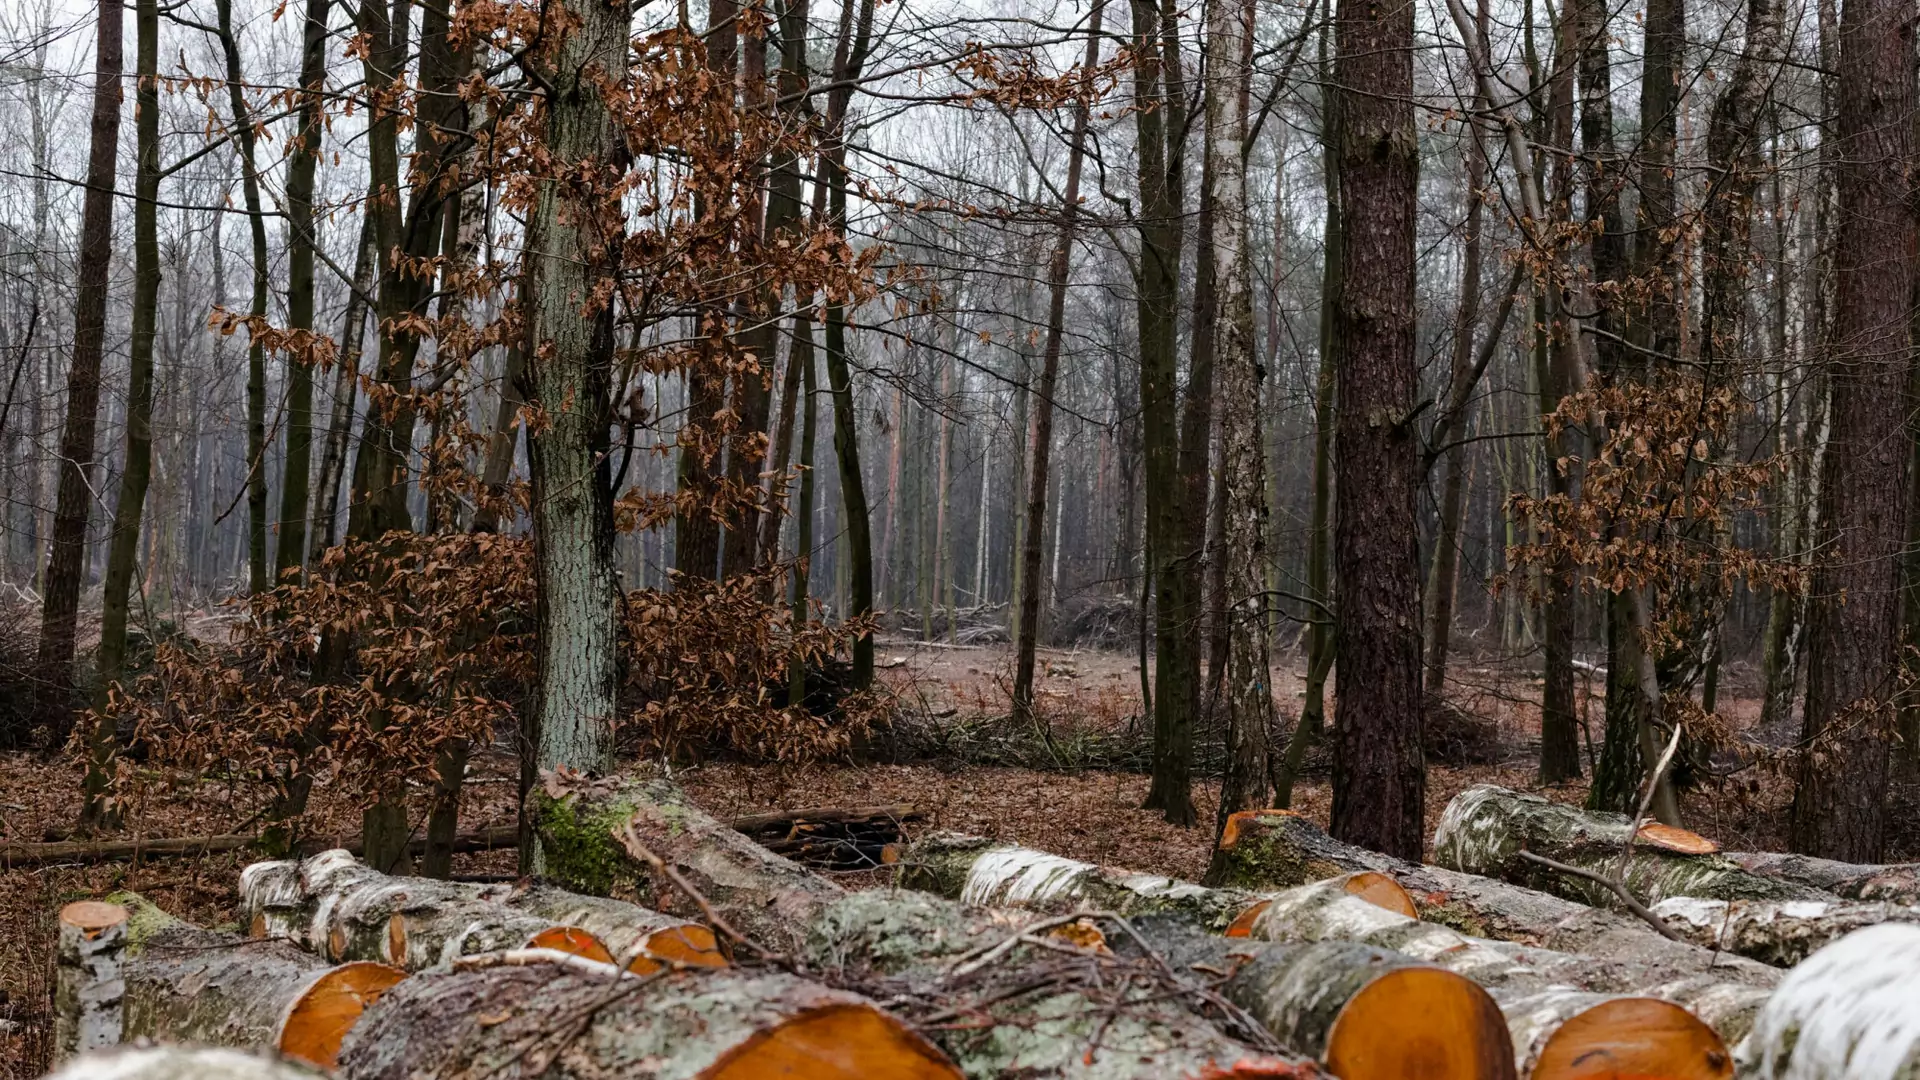 IKEA kupiła ponad 4 tys. hektarów lasu. "Chcemy chronić teren przed wycinką"